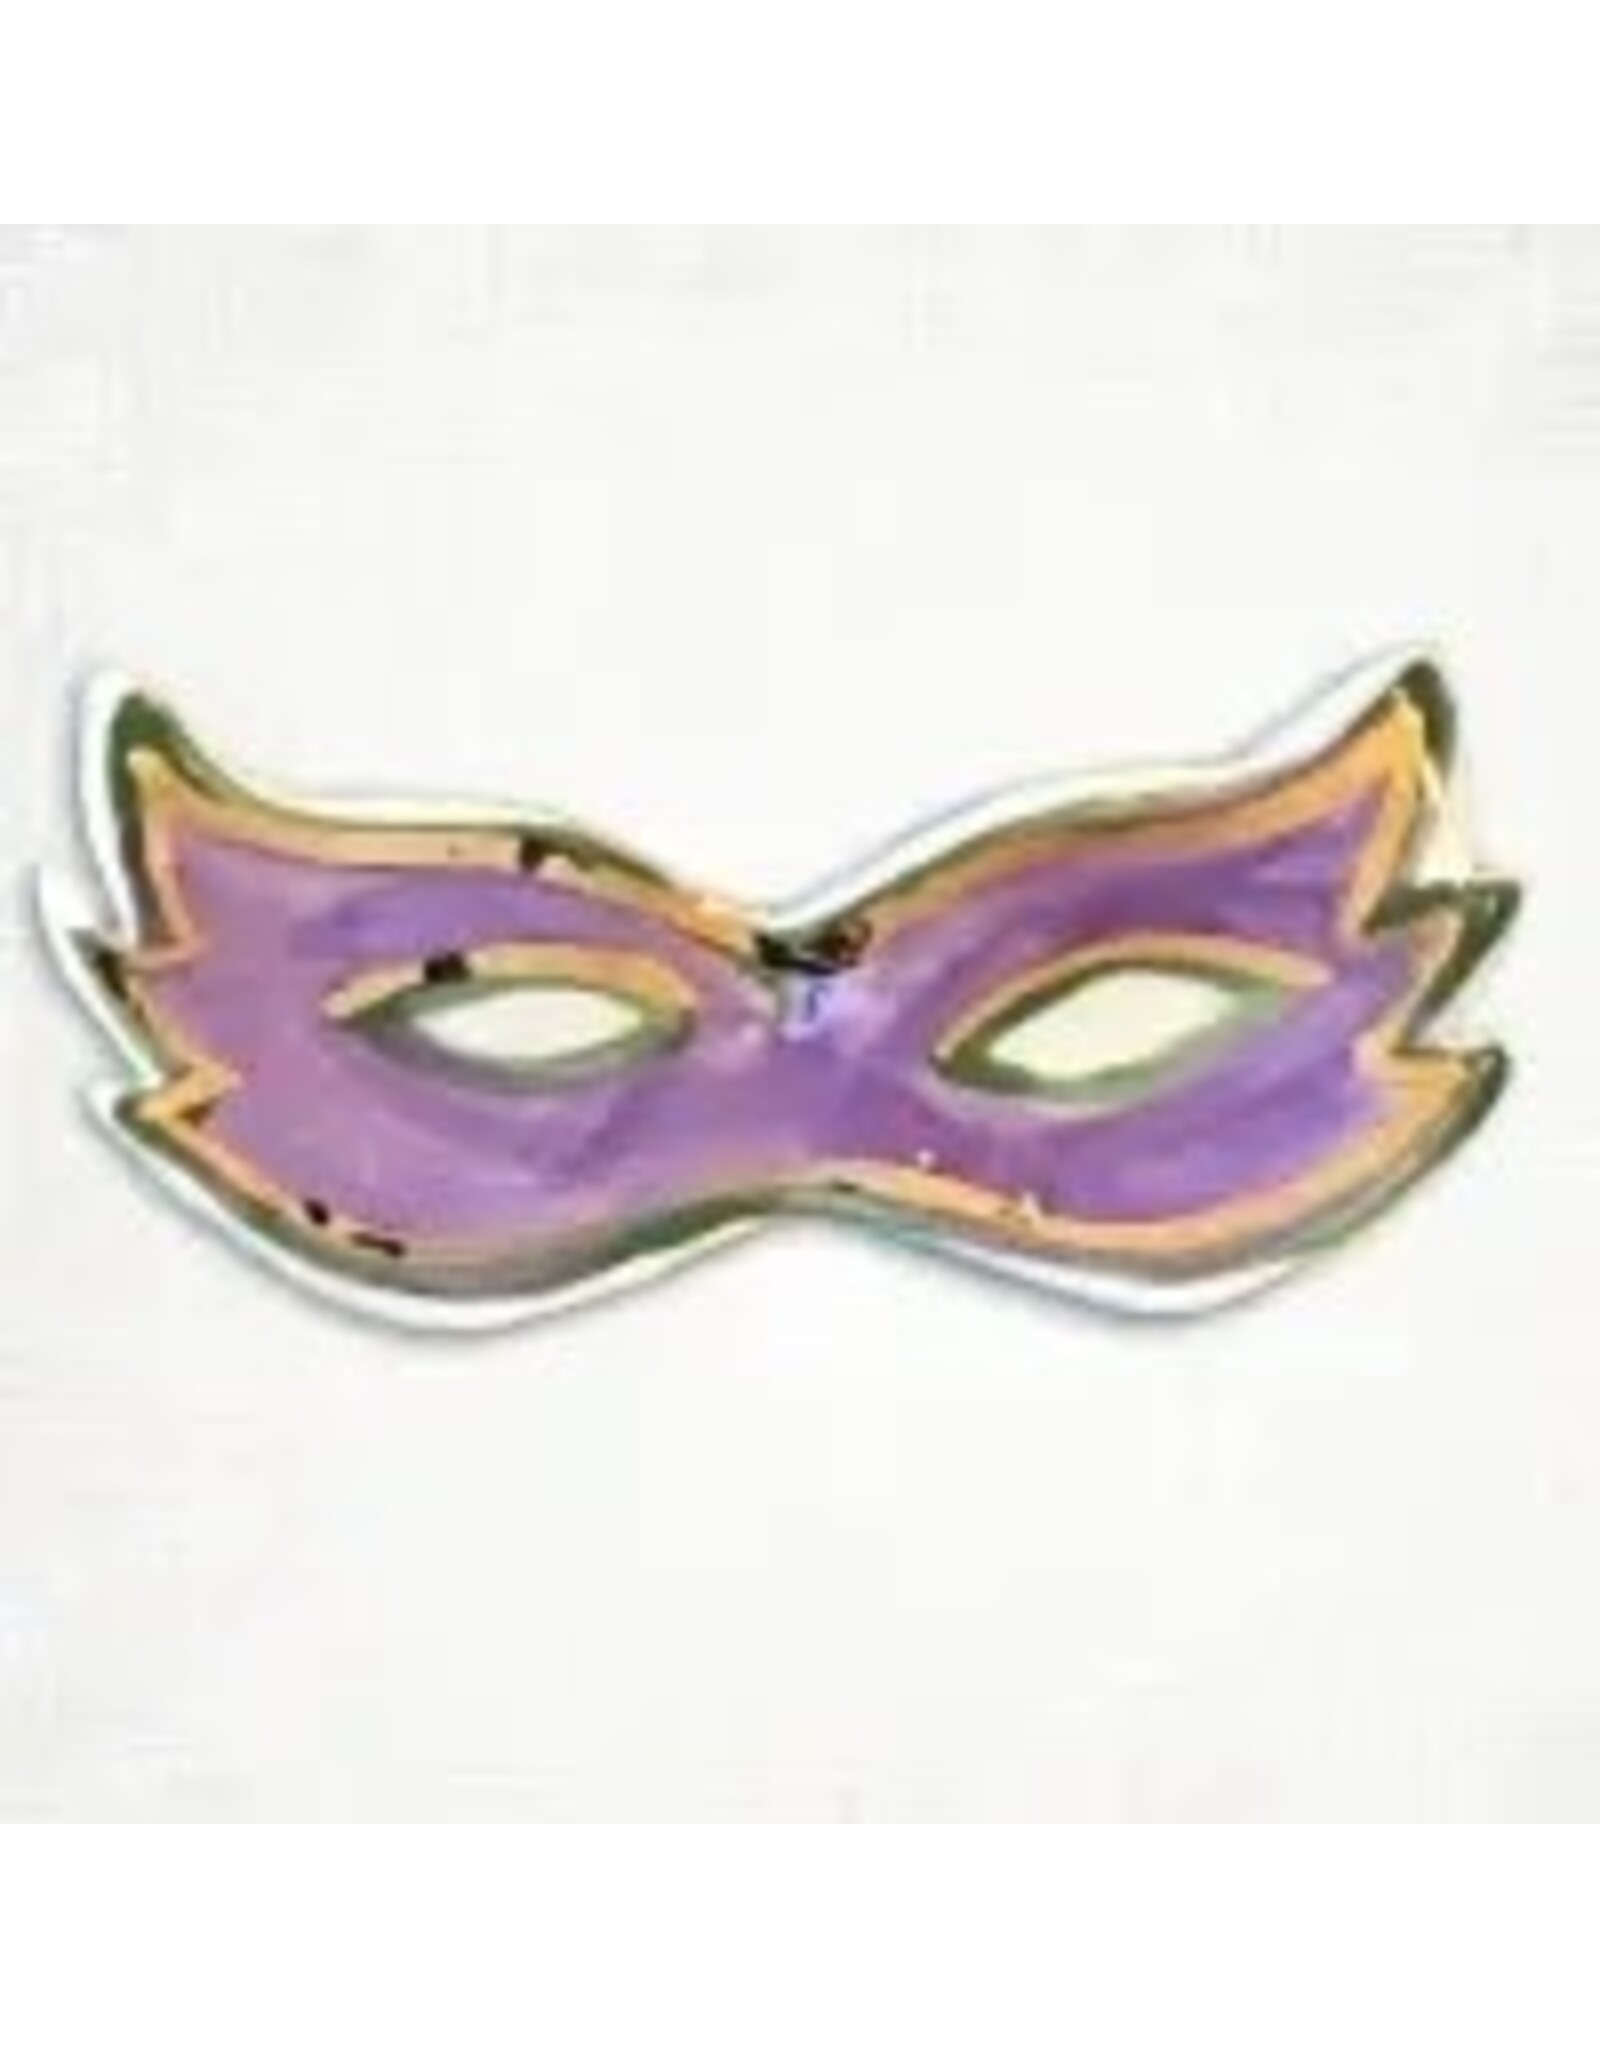 Magnolia Creative Co. Mardi Gras Ceramic Mask Ornament